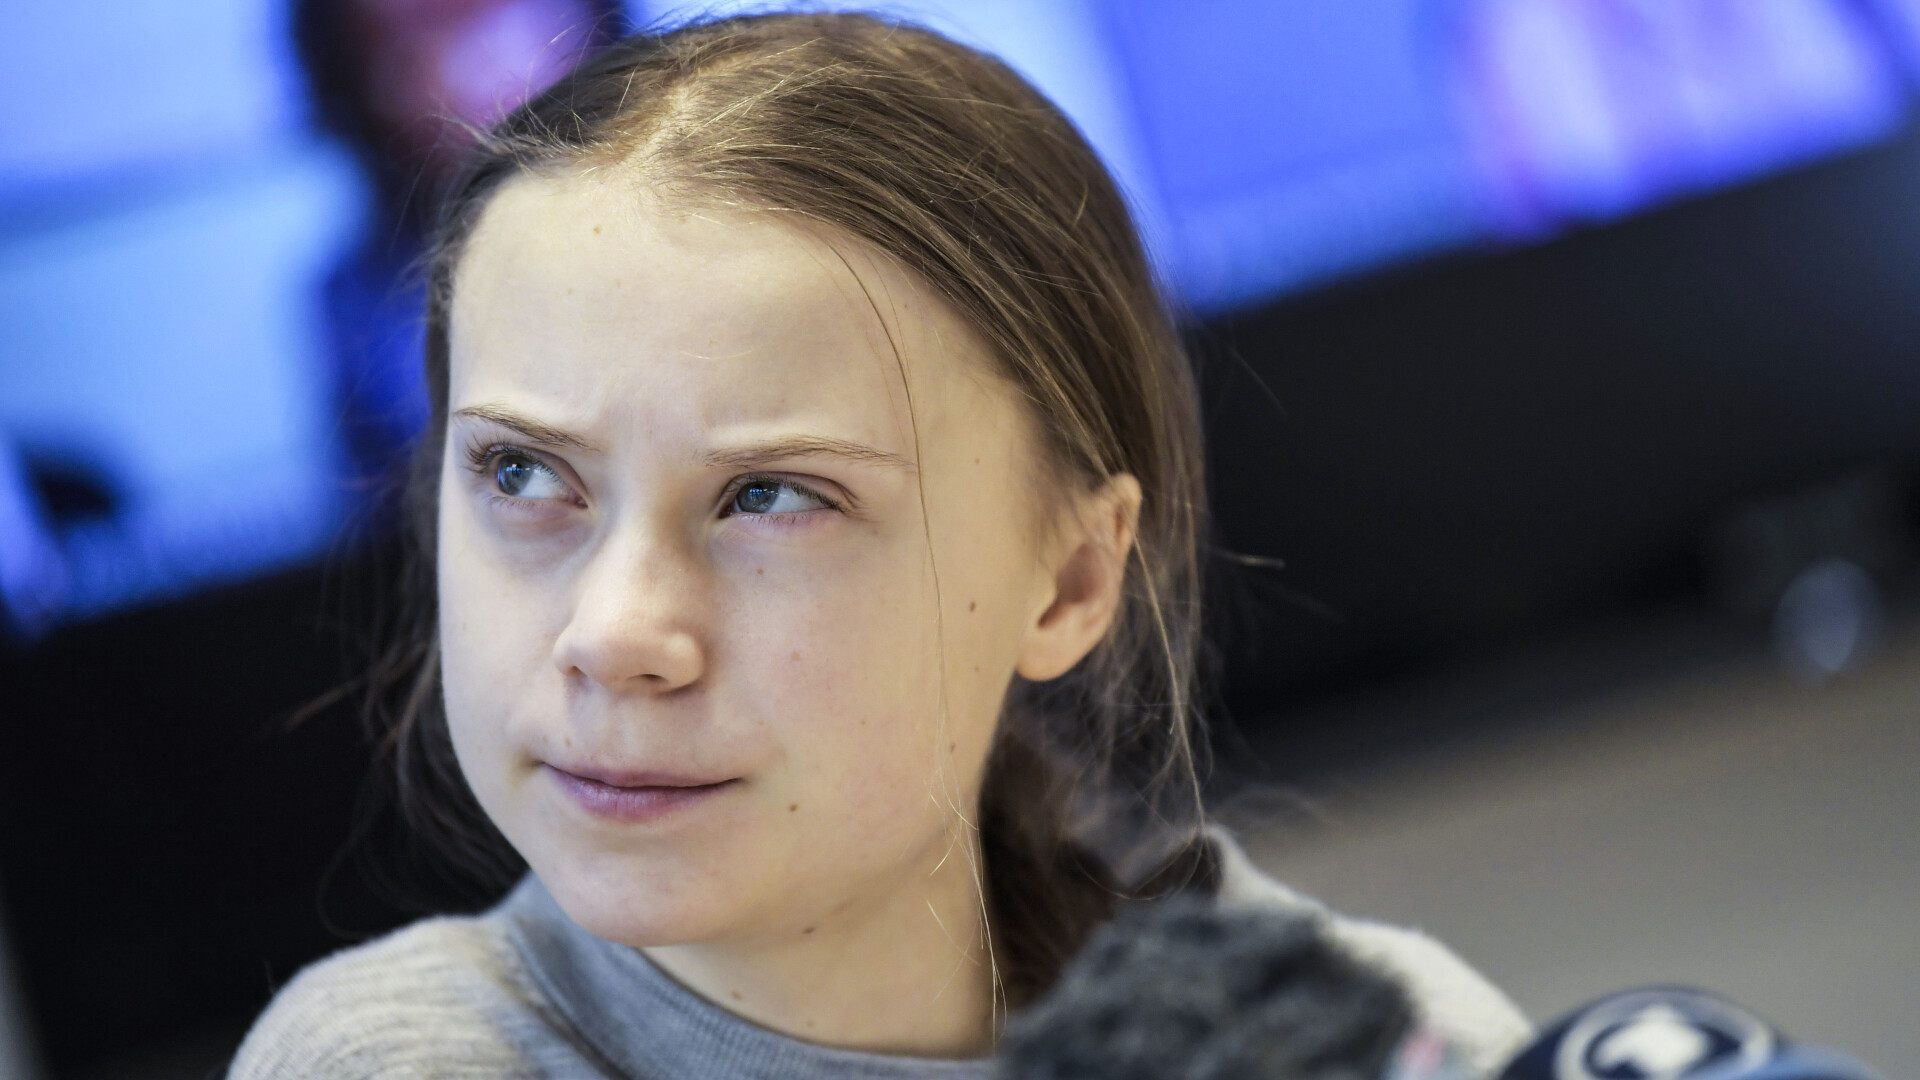 Greta Thunberg spune că cei împotriva care luptă au devenit din ce în ce mai disperați